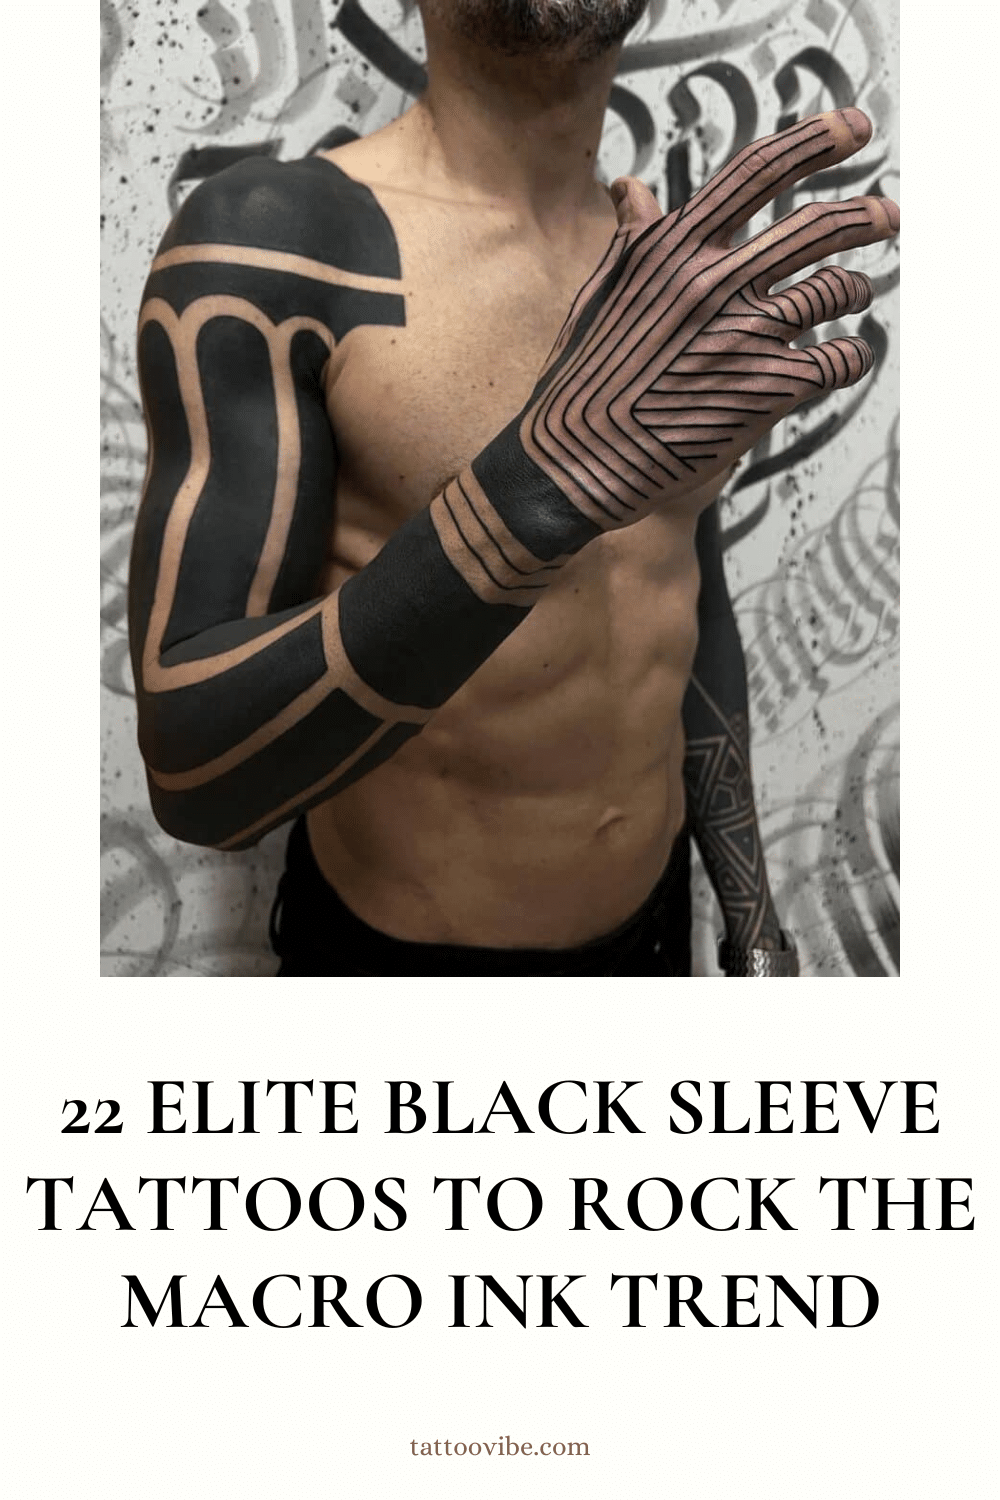 22 Elitetattoos mit schwarzen Ärmeln, die den Makrotinten-Trend rocken